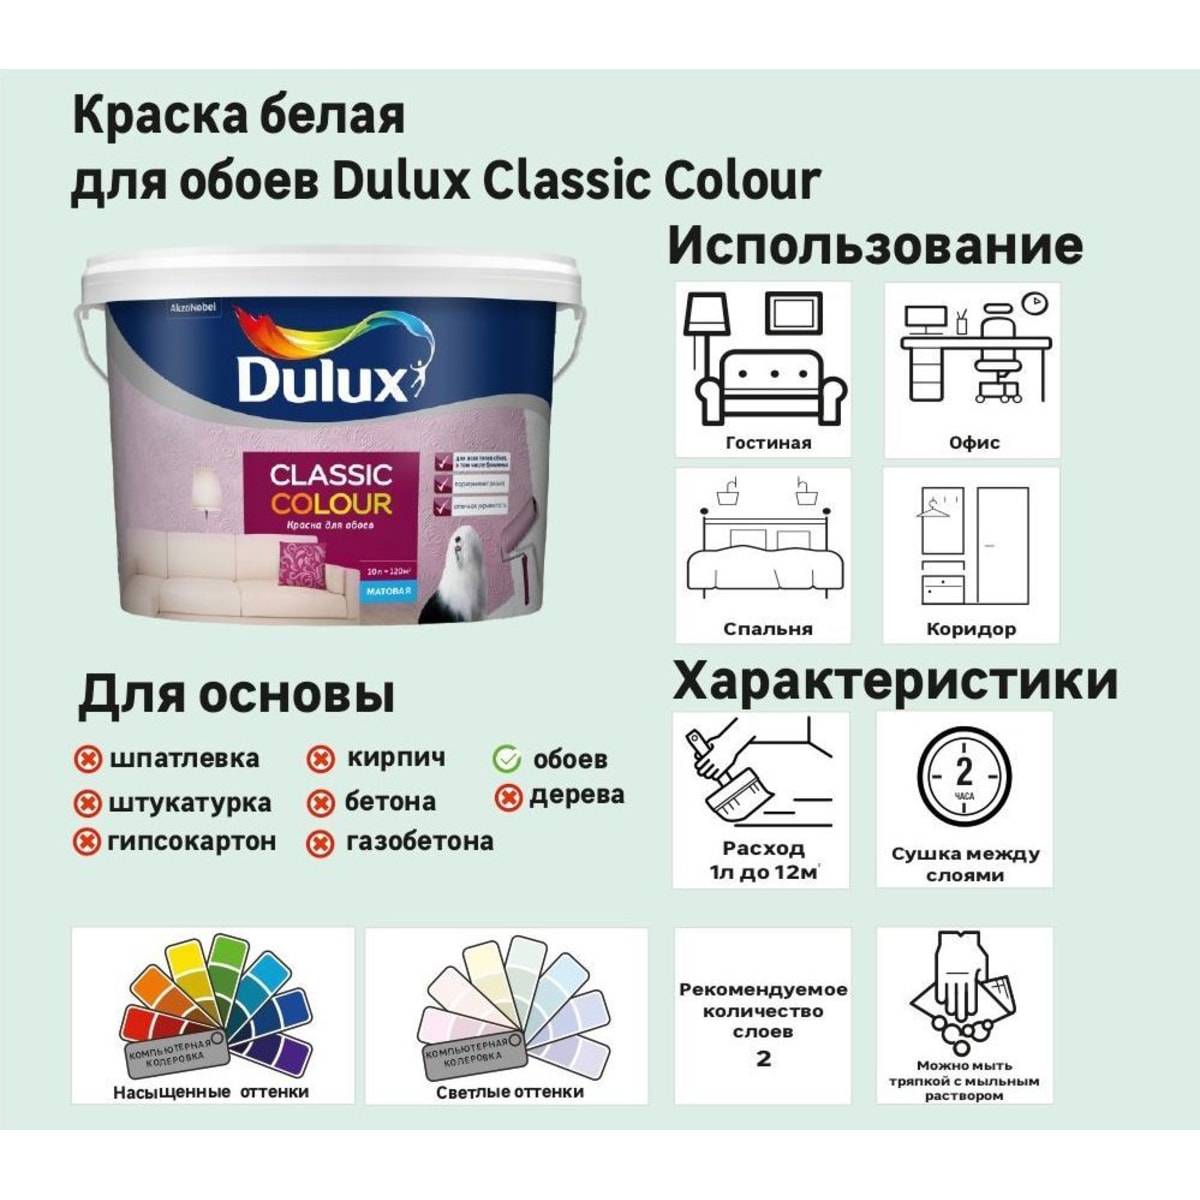 Почему стоит выбирать краску dulux?